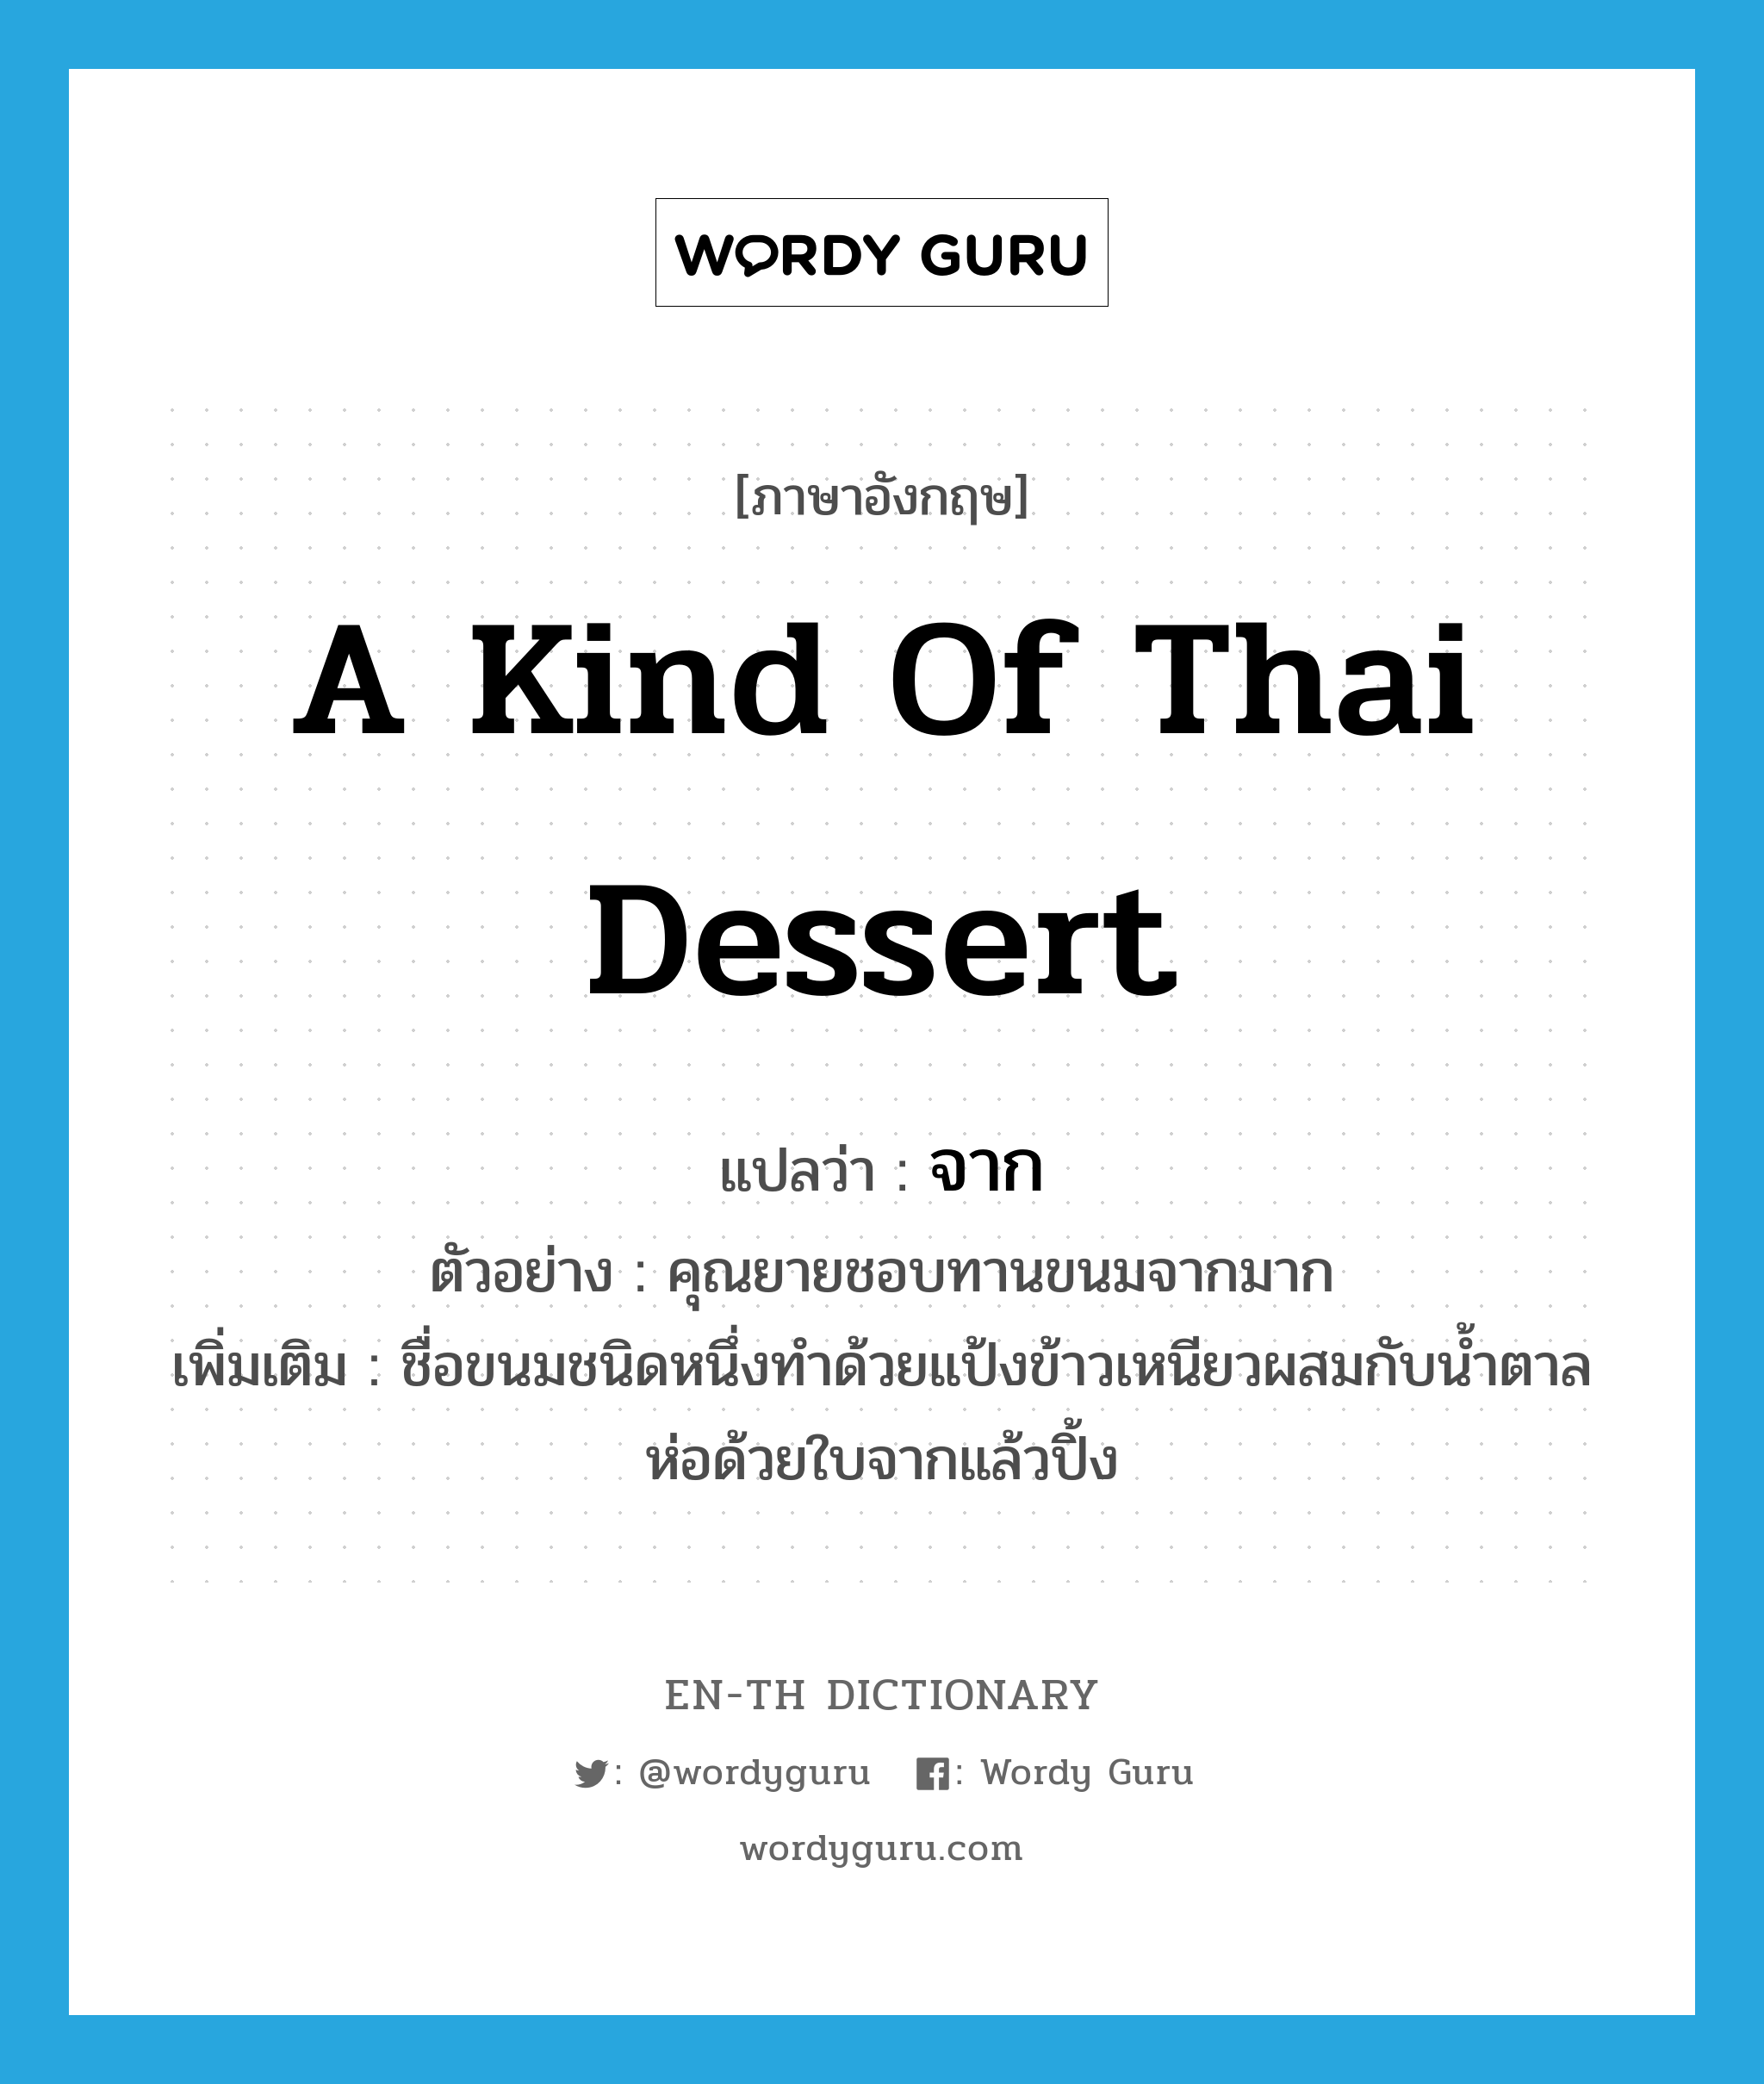 a kind of Thai dessert แปลว่า?, คำศัพท์ภาษาอังกฤษ a kind of Thai dessert แปลว่า จาก ประเภท N ตัวอย่าง คุณยายชอบทานขนมจากมาก เพิ่มเติม ชื่อขนมชนิดหนึ่งทำด้วยแป้งข้าวเหนียวผสมกับน้ำตาล ห่อด้วยใบจากแล้วปิ้ง หมวด N